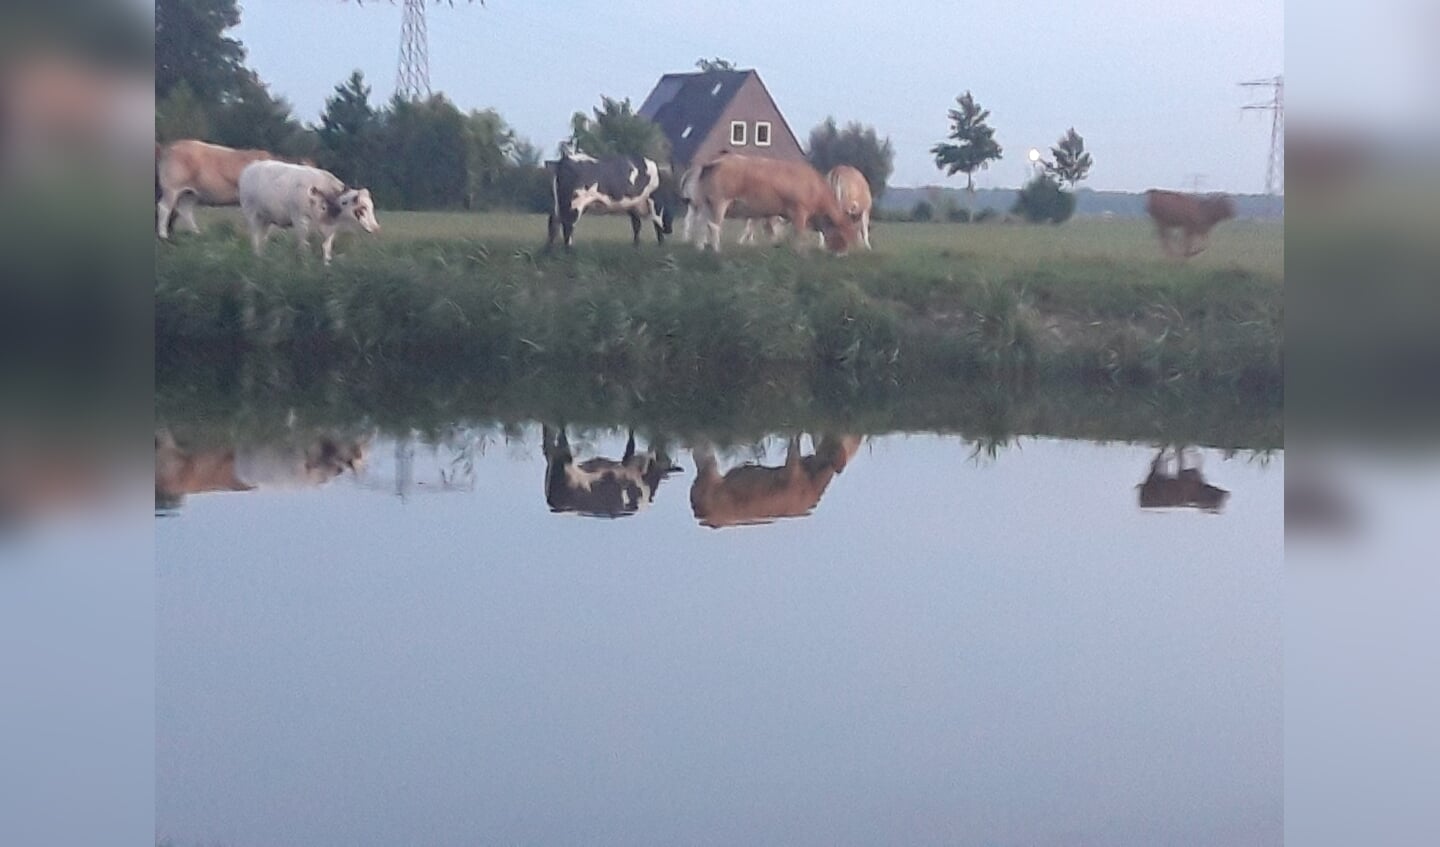 'Koeien grazend langs de Dokkumer Ee in de avondzon. Kalfjes en koeien bij elkaar.'